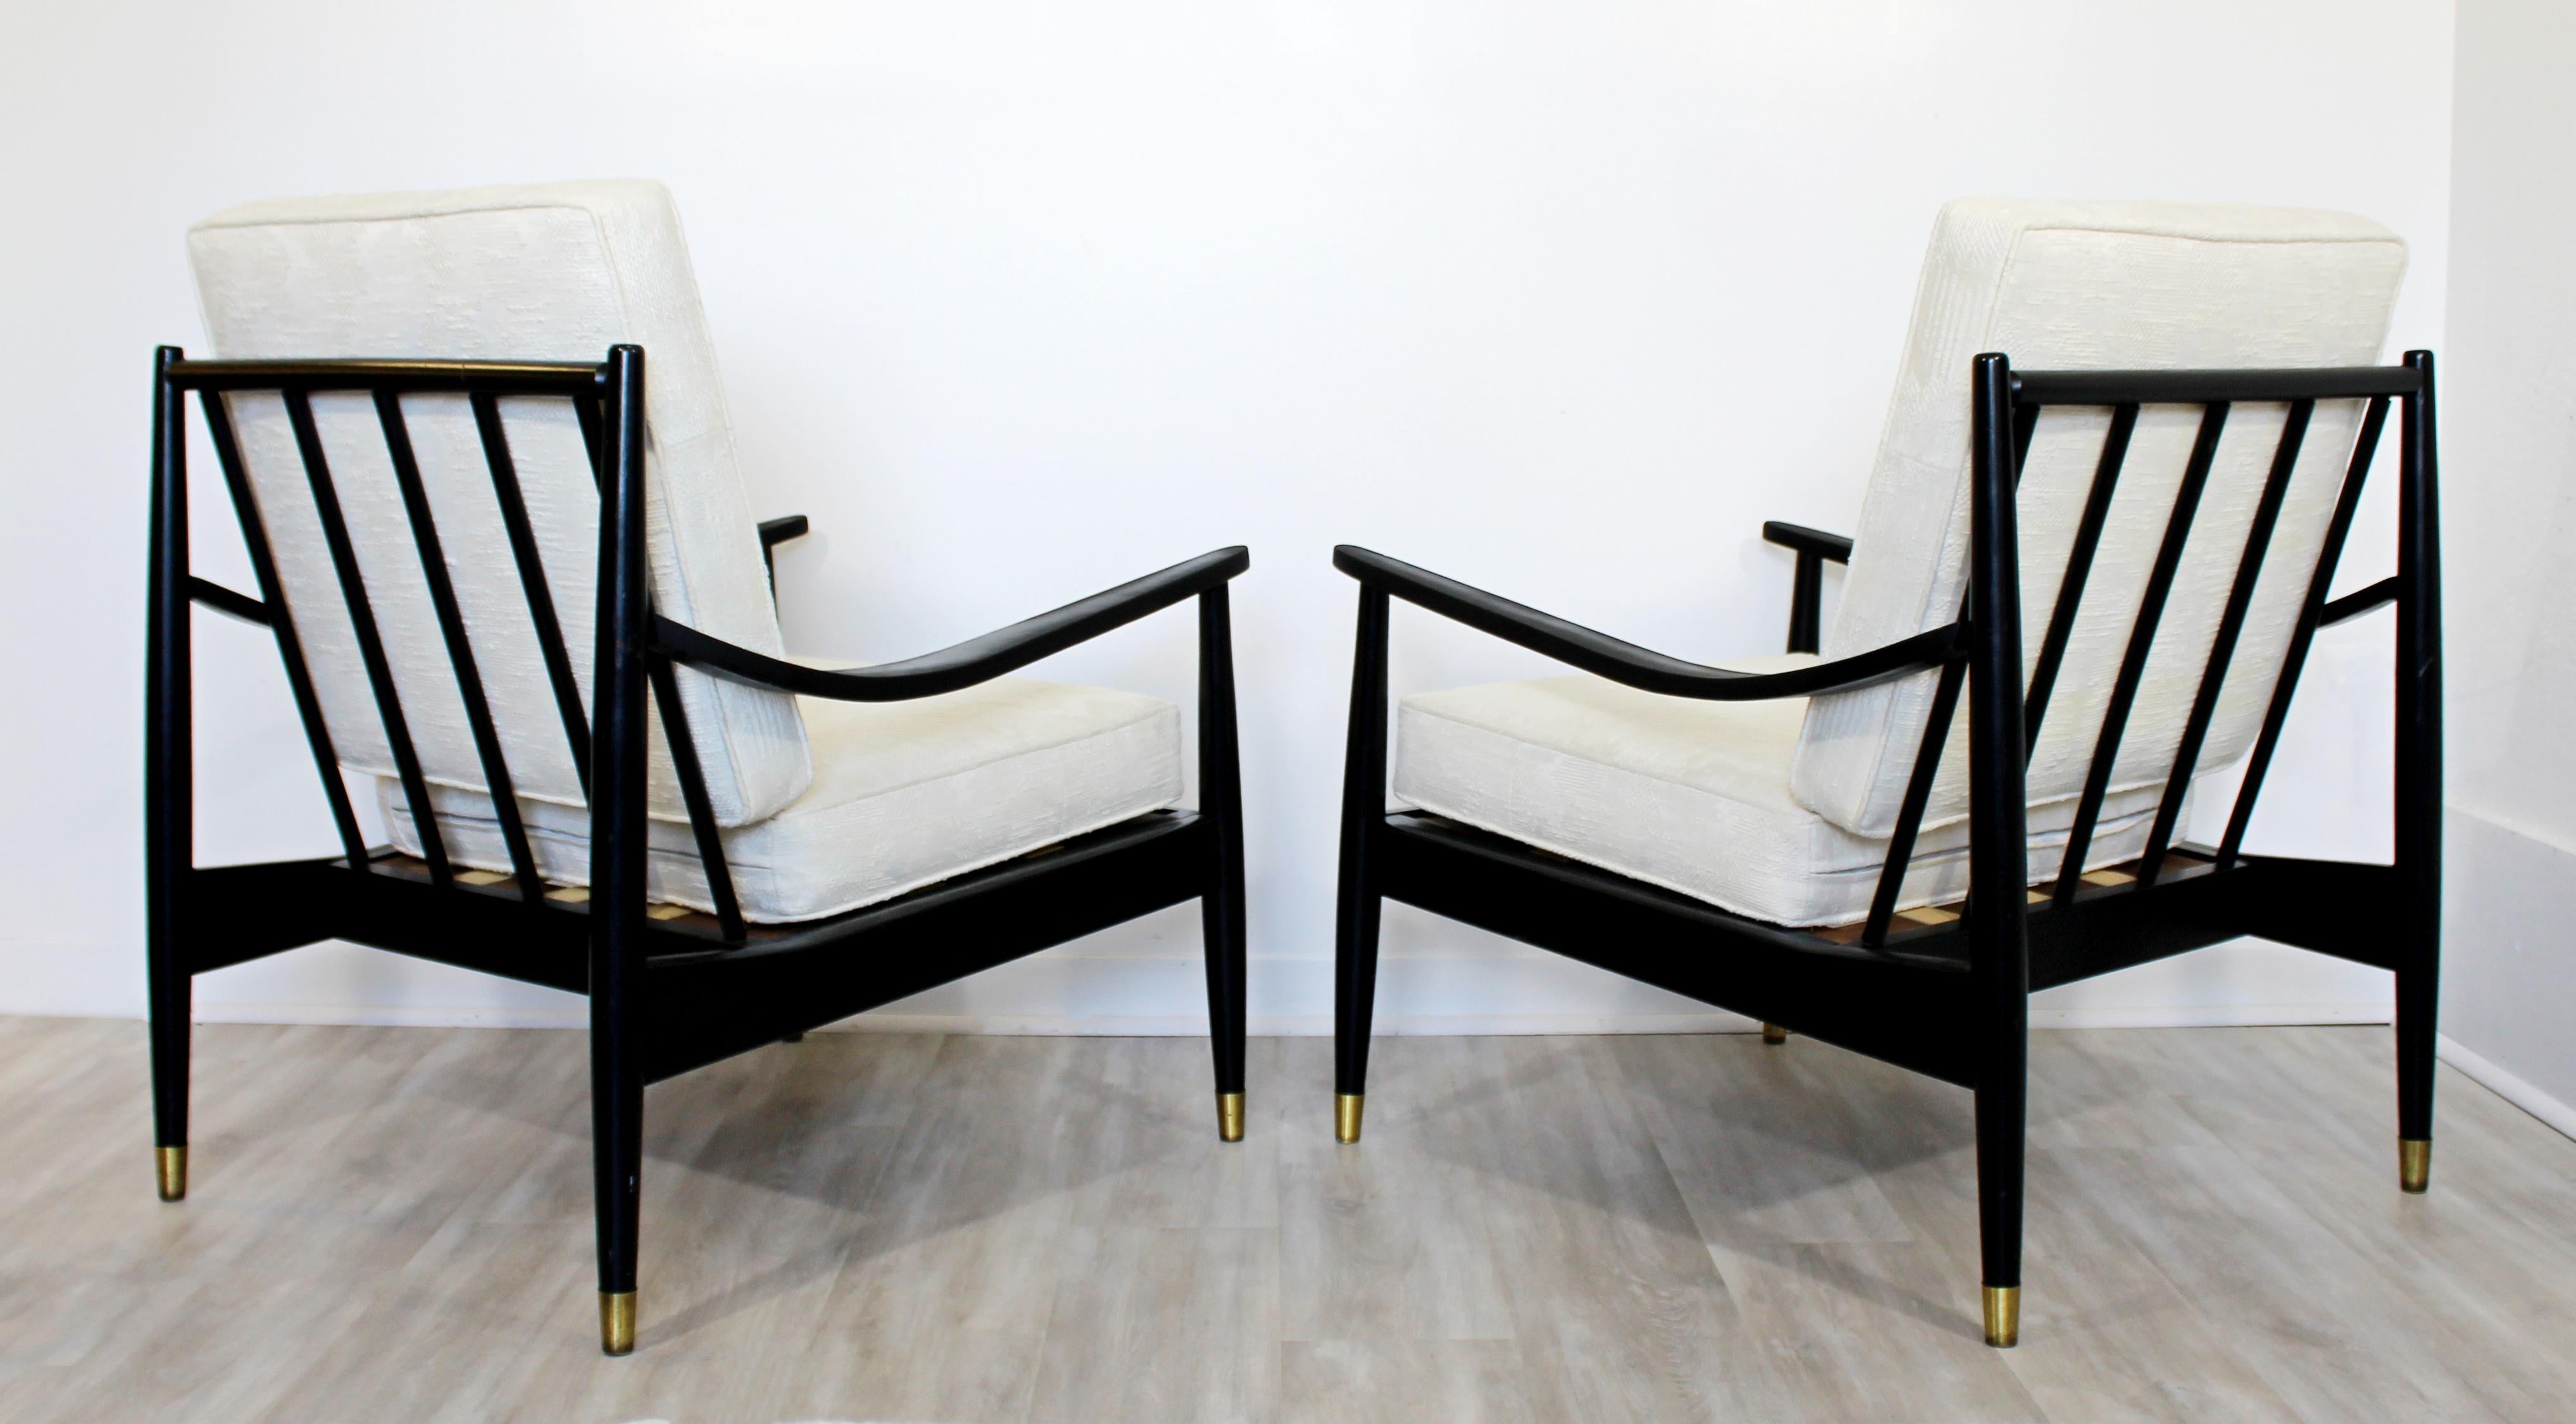 Mid-20th Century Mid-Century Modern Wythe Craft Pair of Armchairs & Ottoman 1950s Danish Style